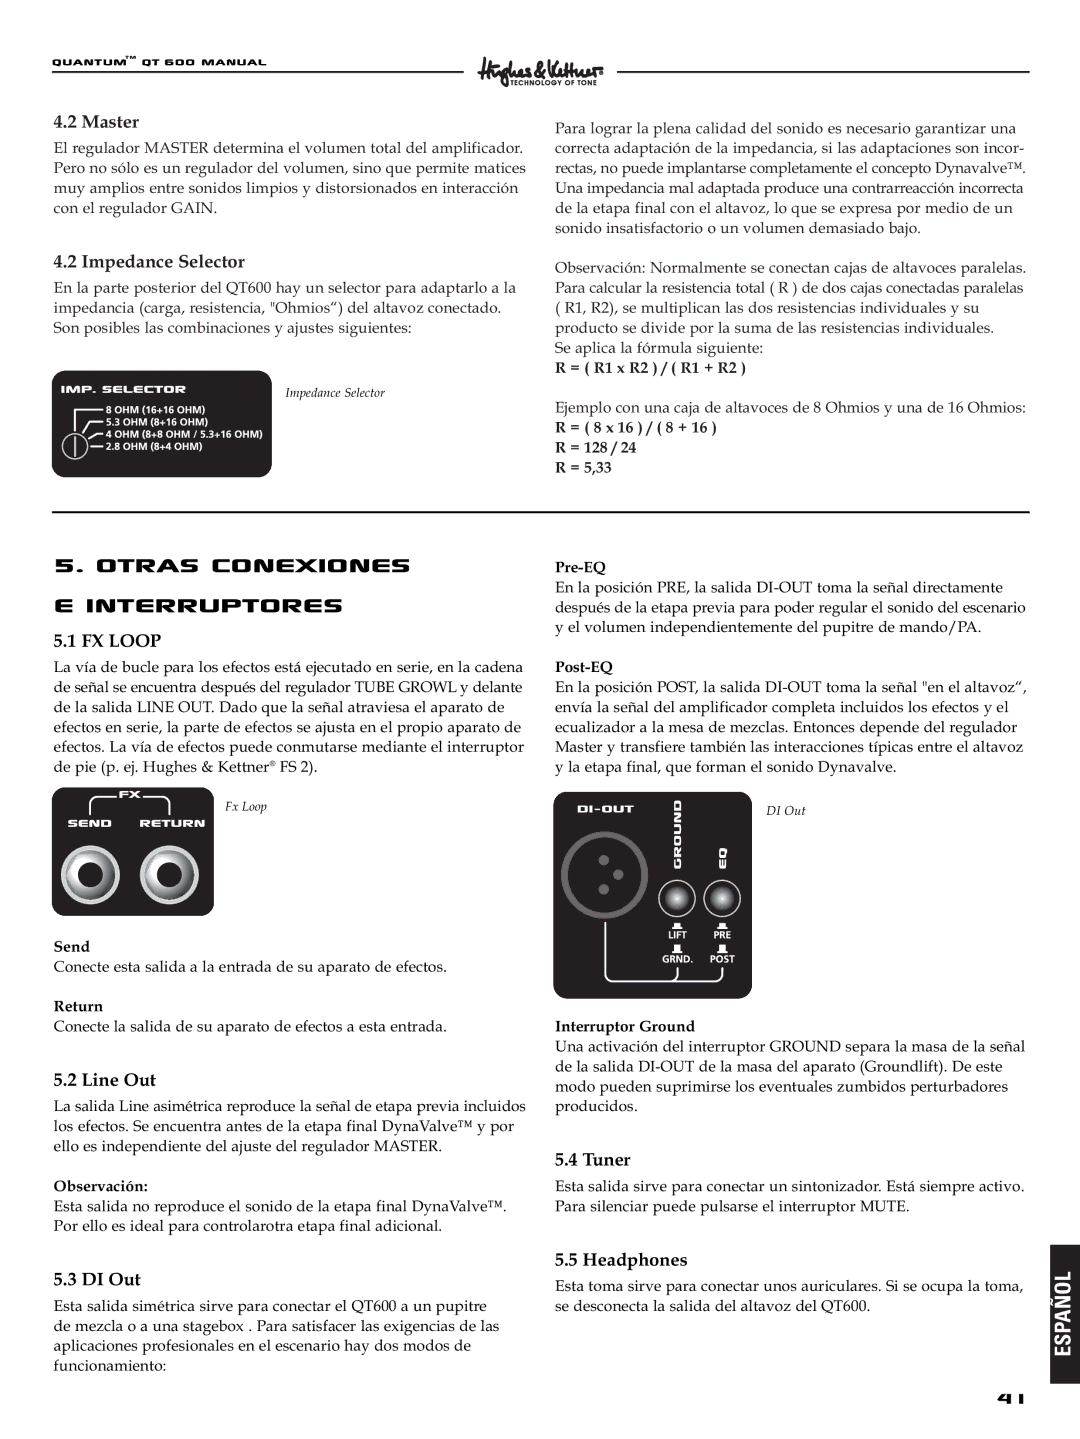 Quantum QT600 manual Otras conexiones Interruptores, Observación, Interruptor Ground 